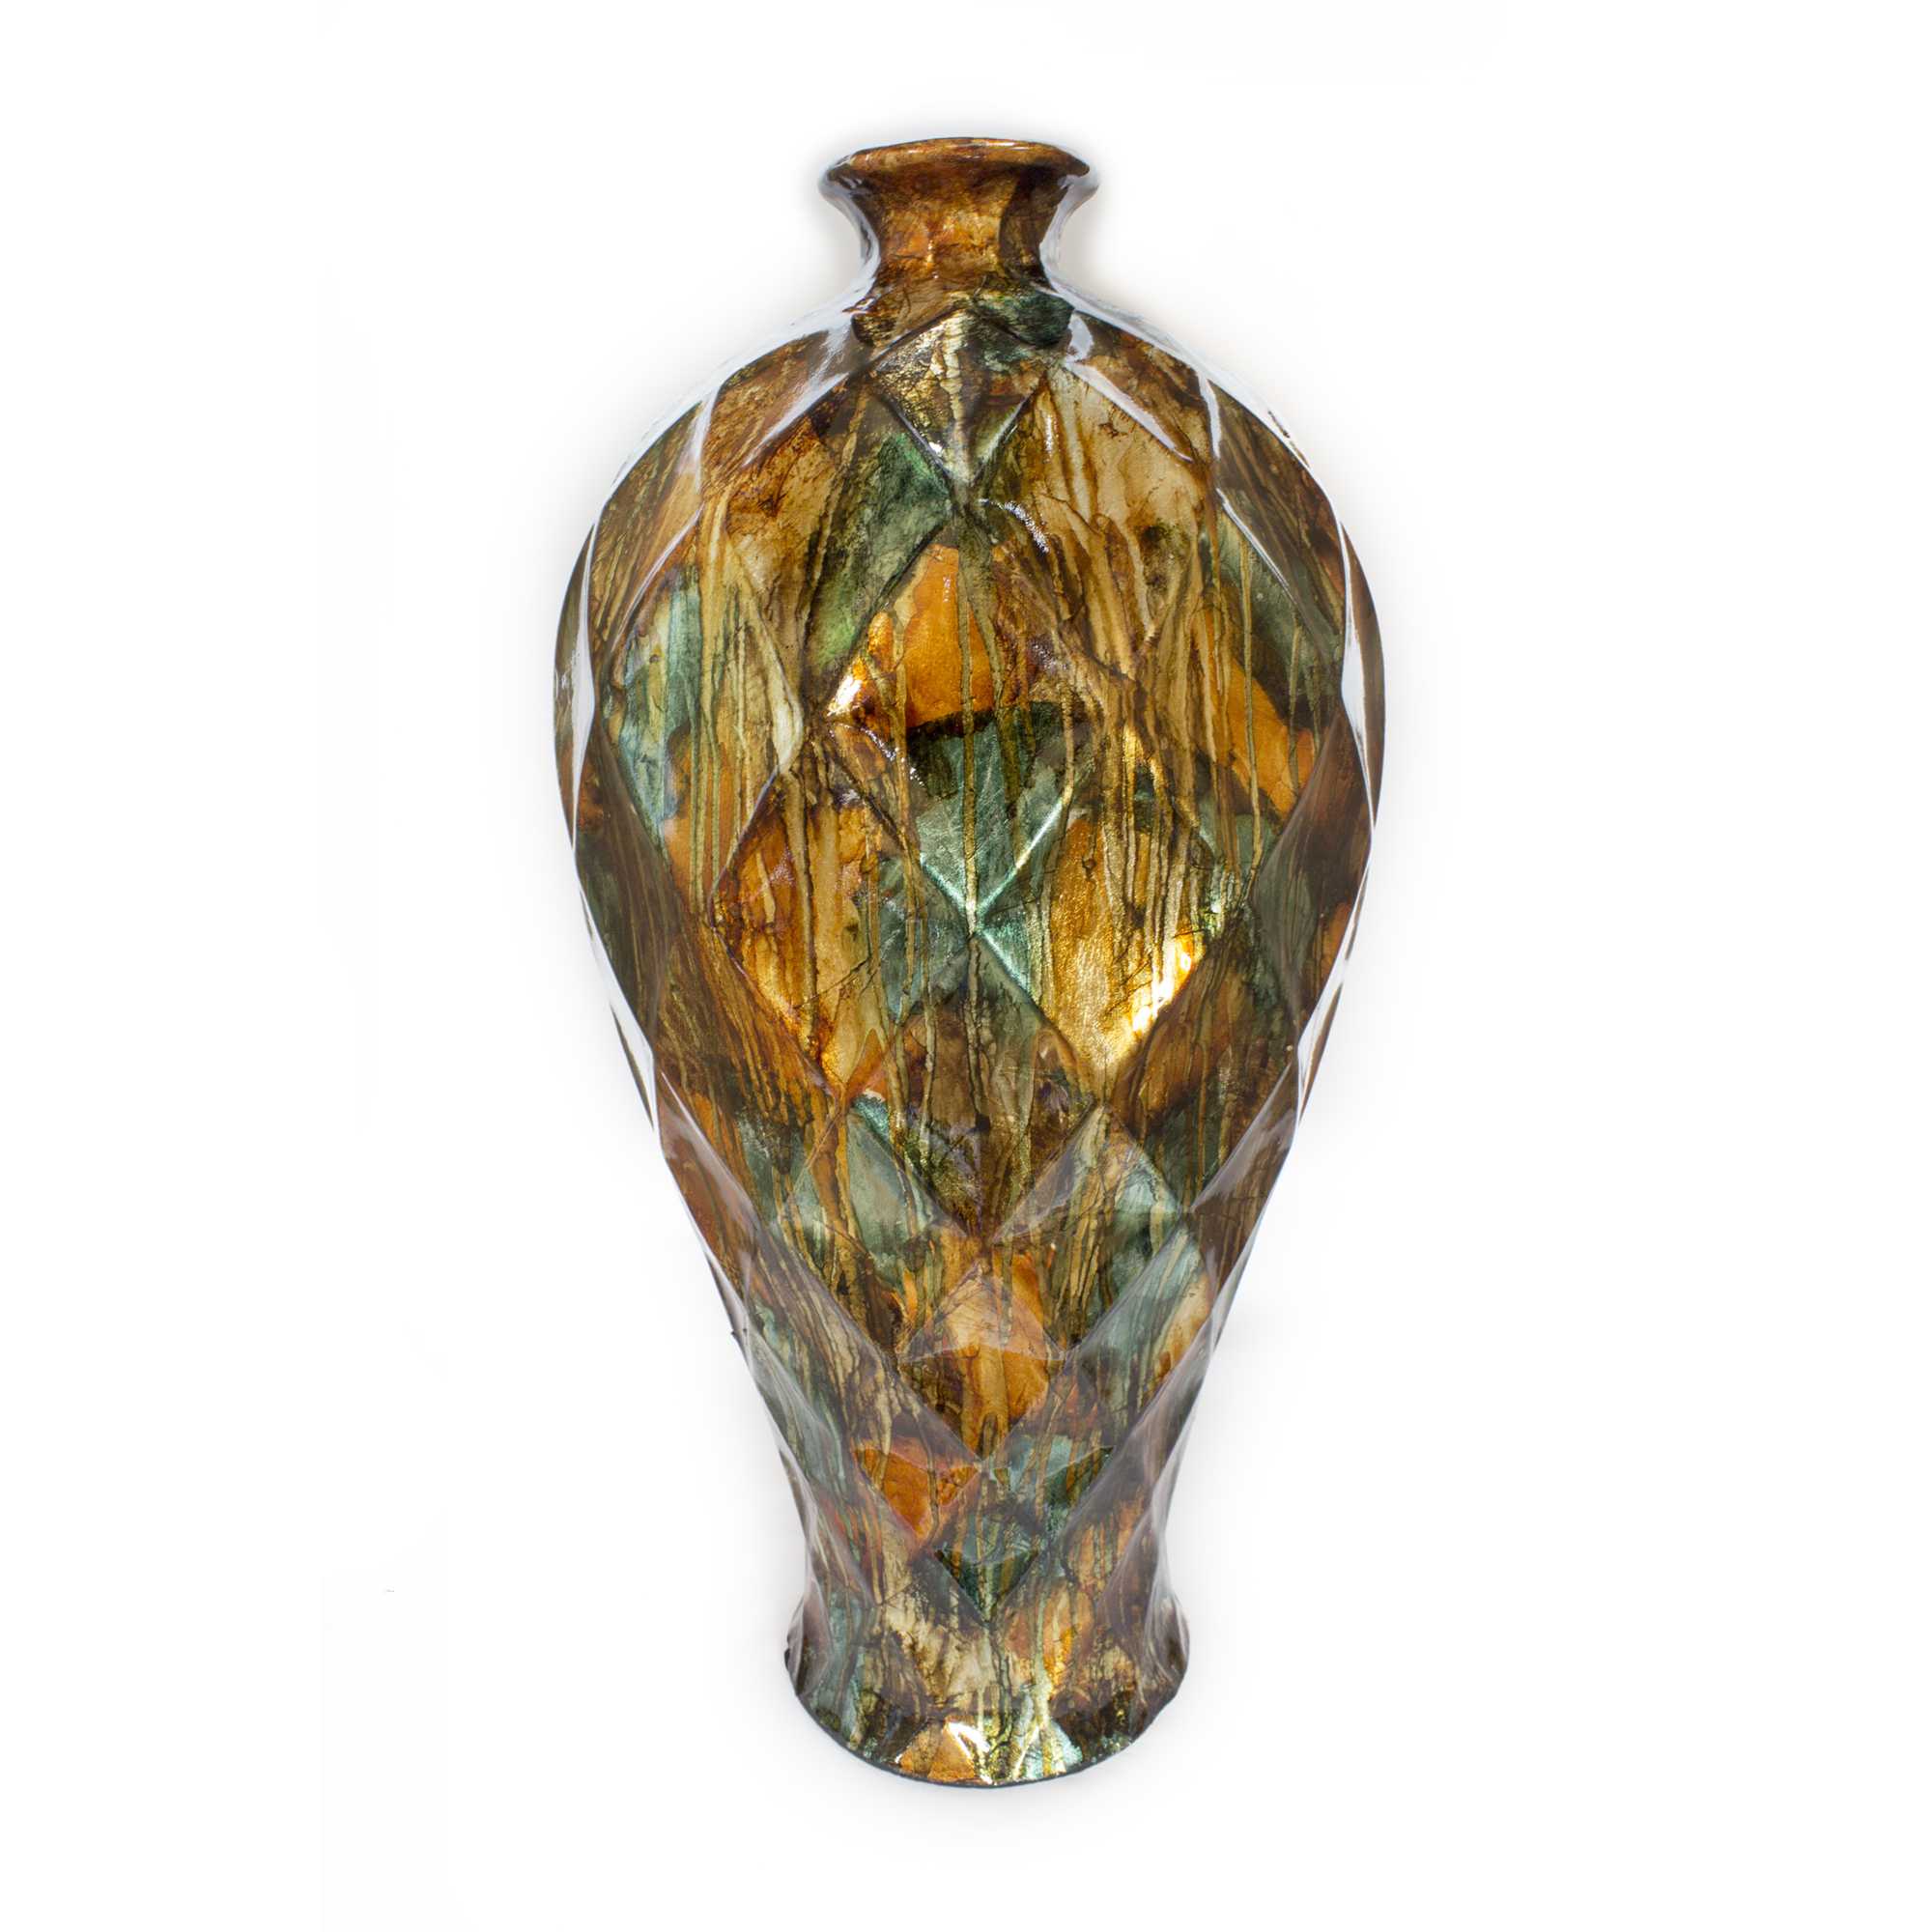 9.5" X 9.5" X 20" Natural Ceramic Floor Vase